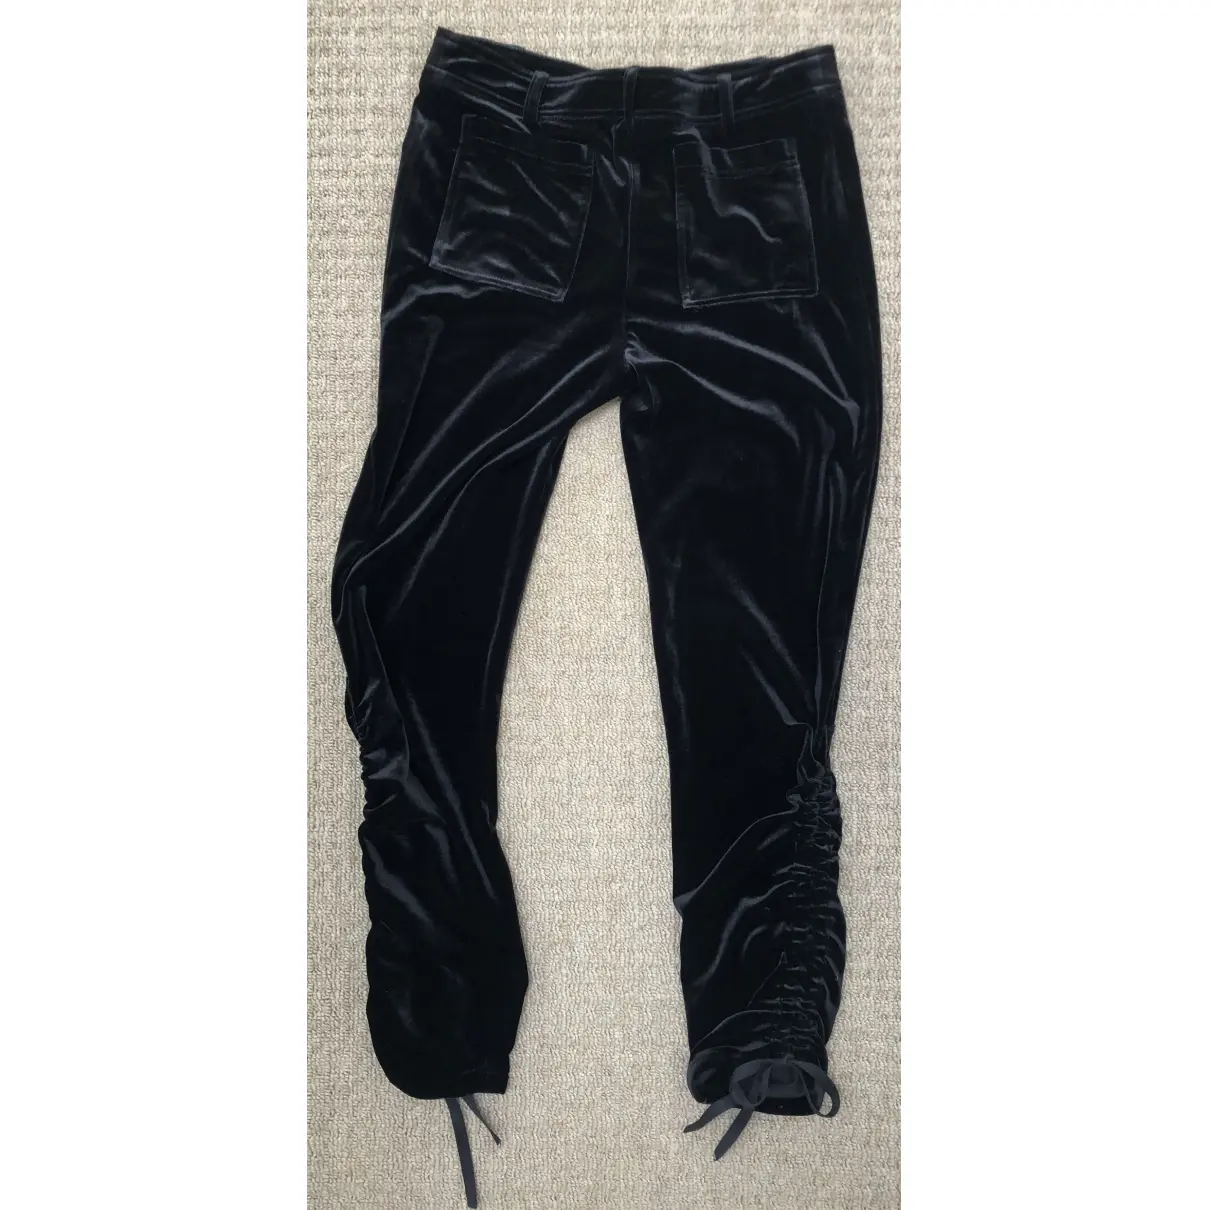 Buy Preen Line Velvet trousers online